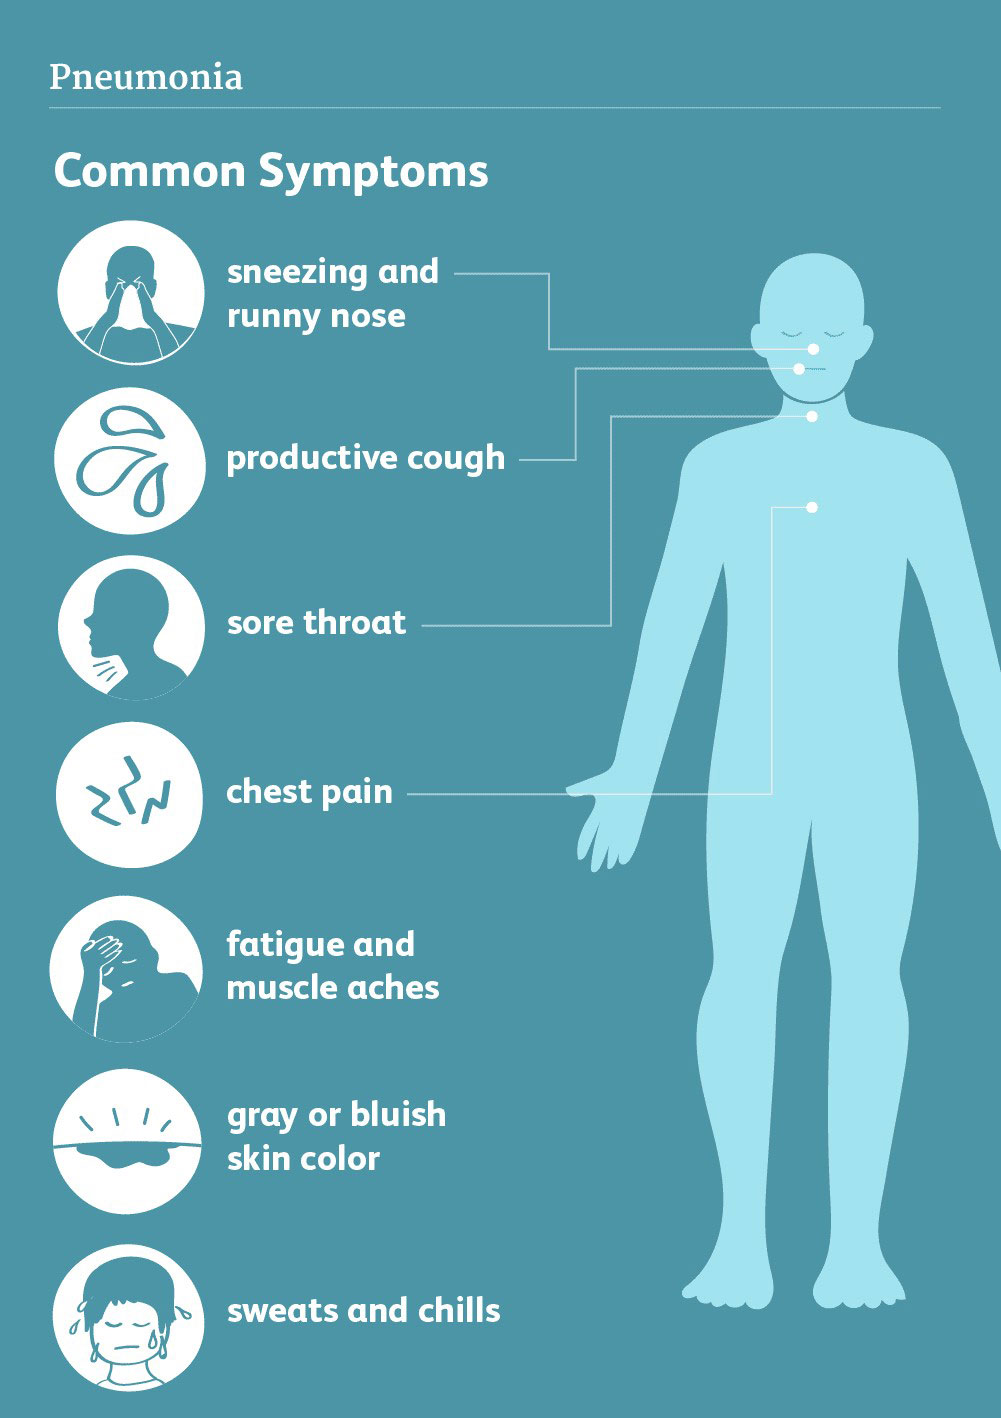 
Common Symptoms of Covid-19 Pneumonia
